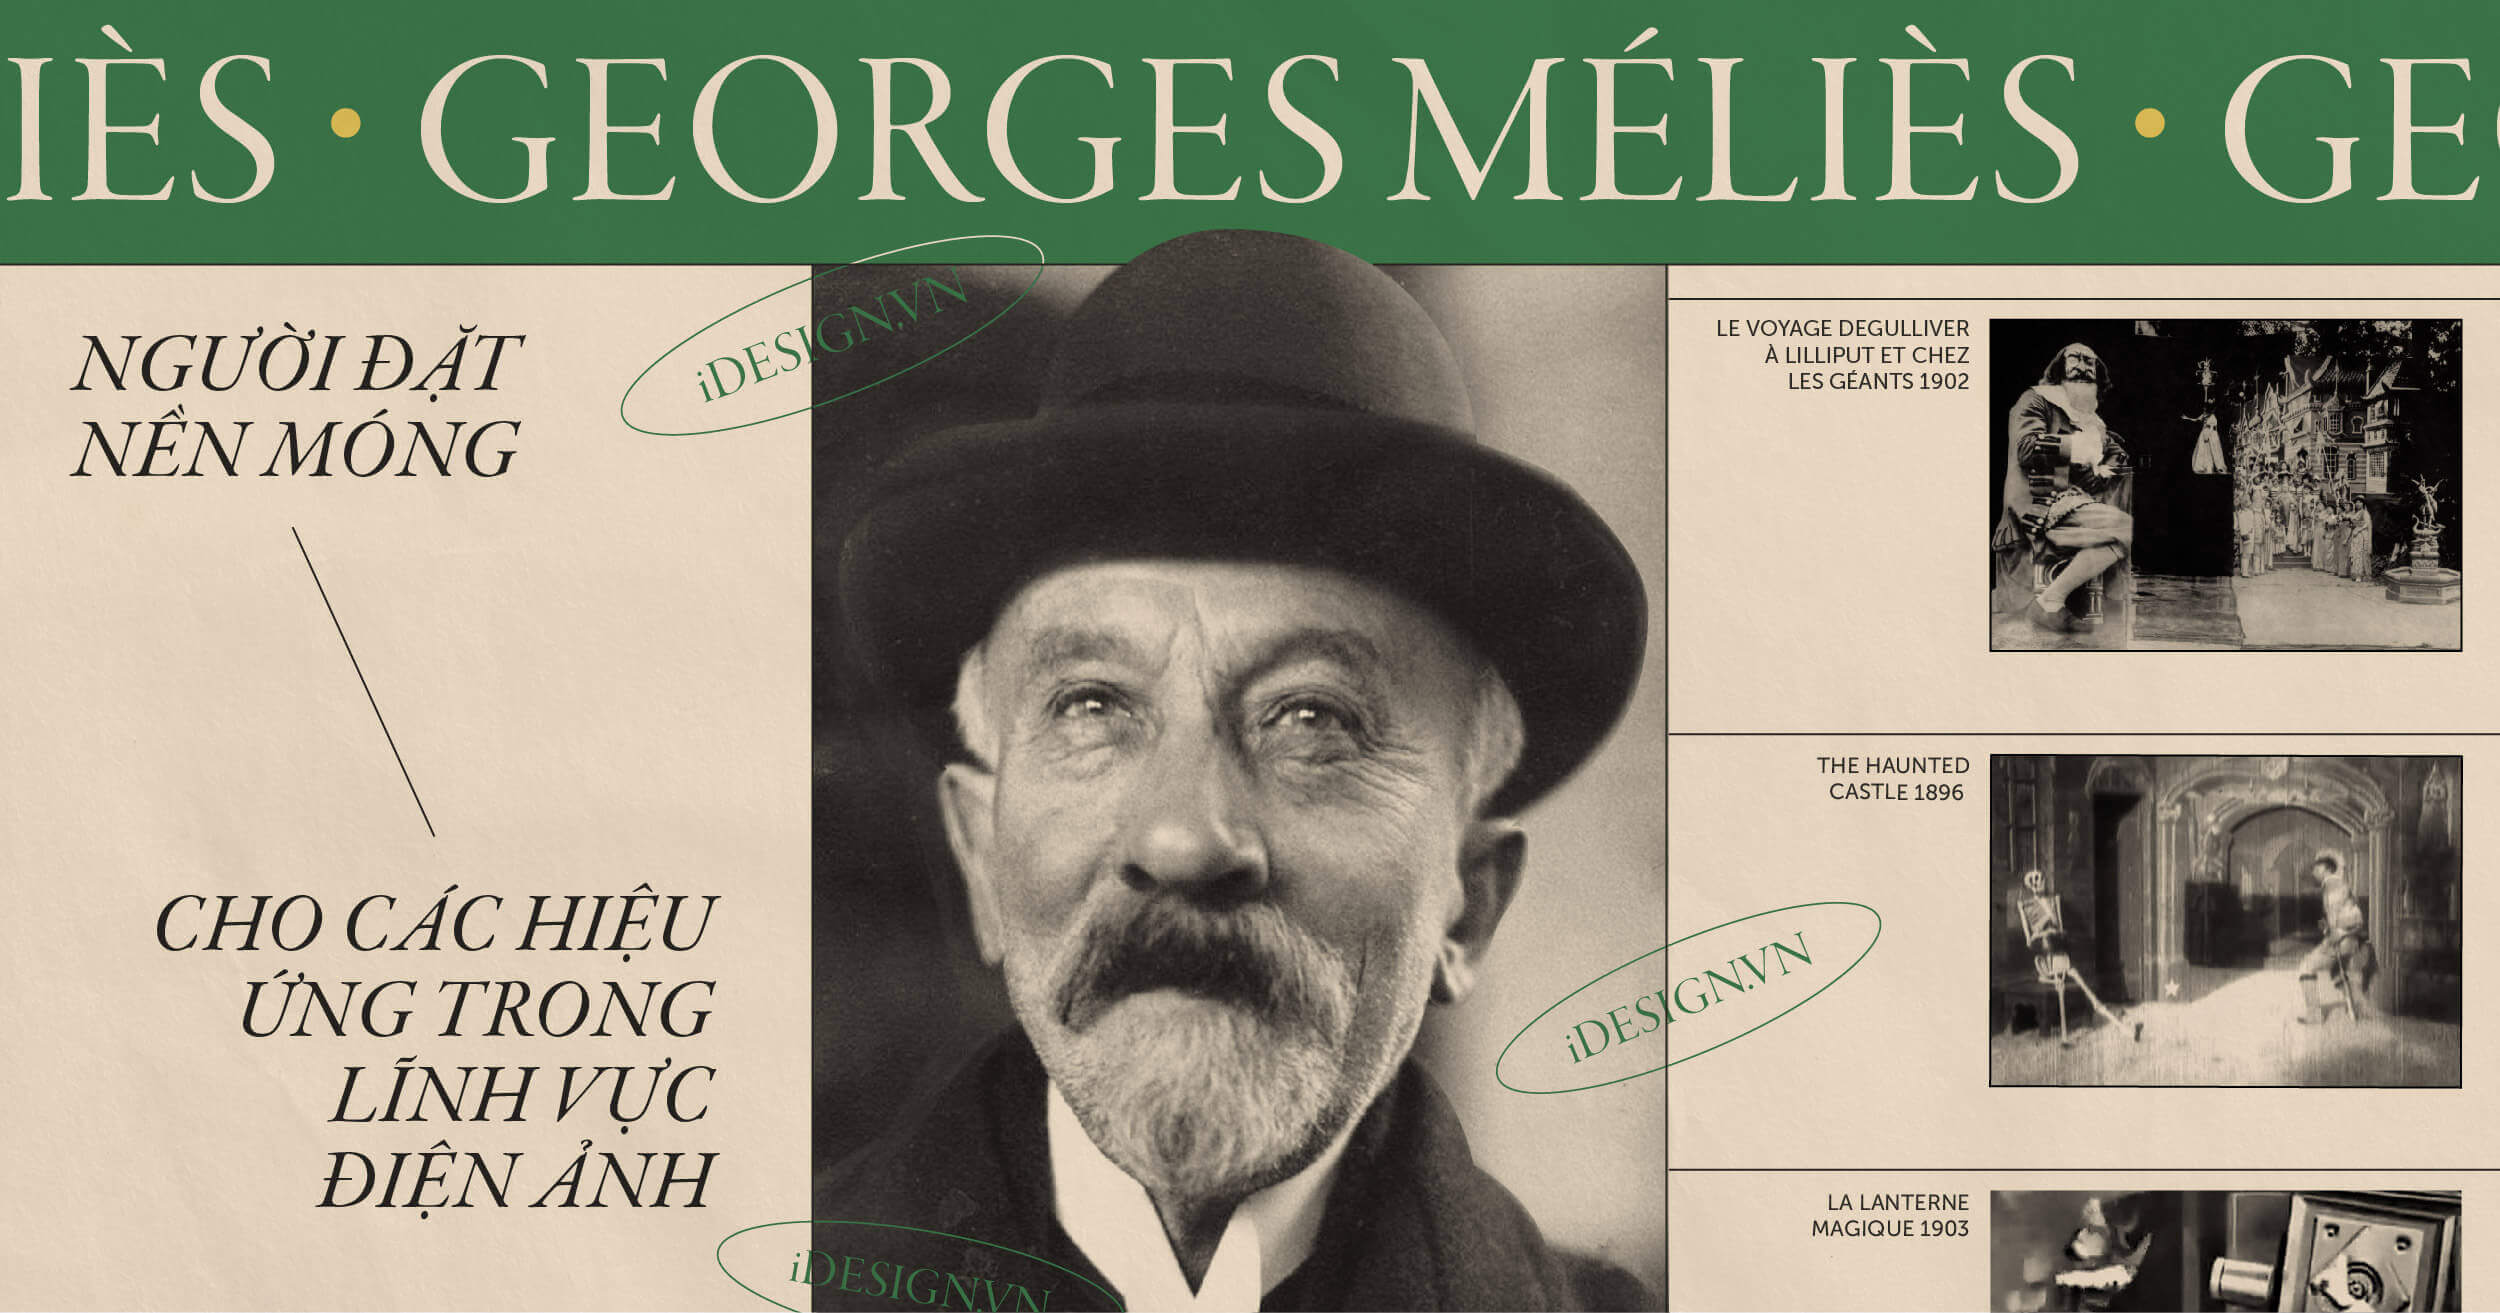 iDesign | Georges Méliès - người đặt nền móng cho các hiệu ứng trong lĩnh vực điện ảnh